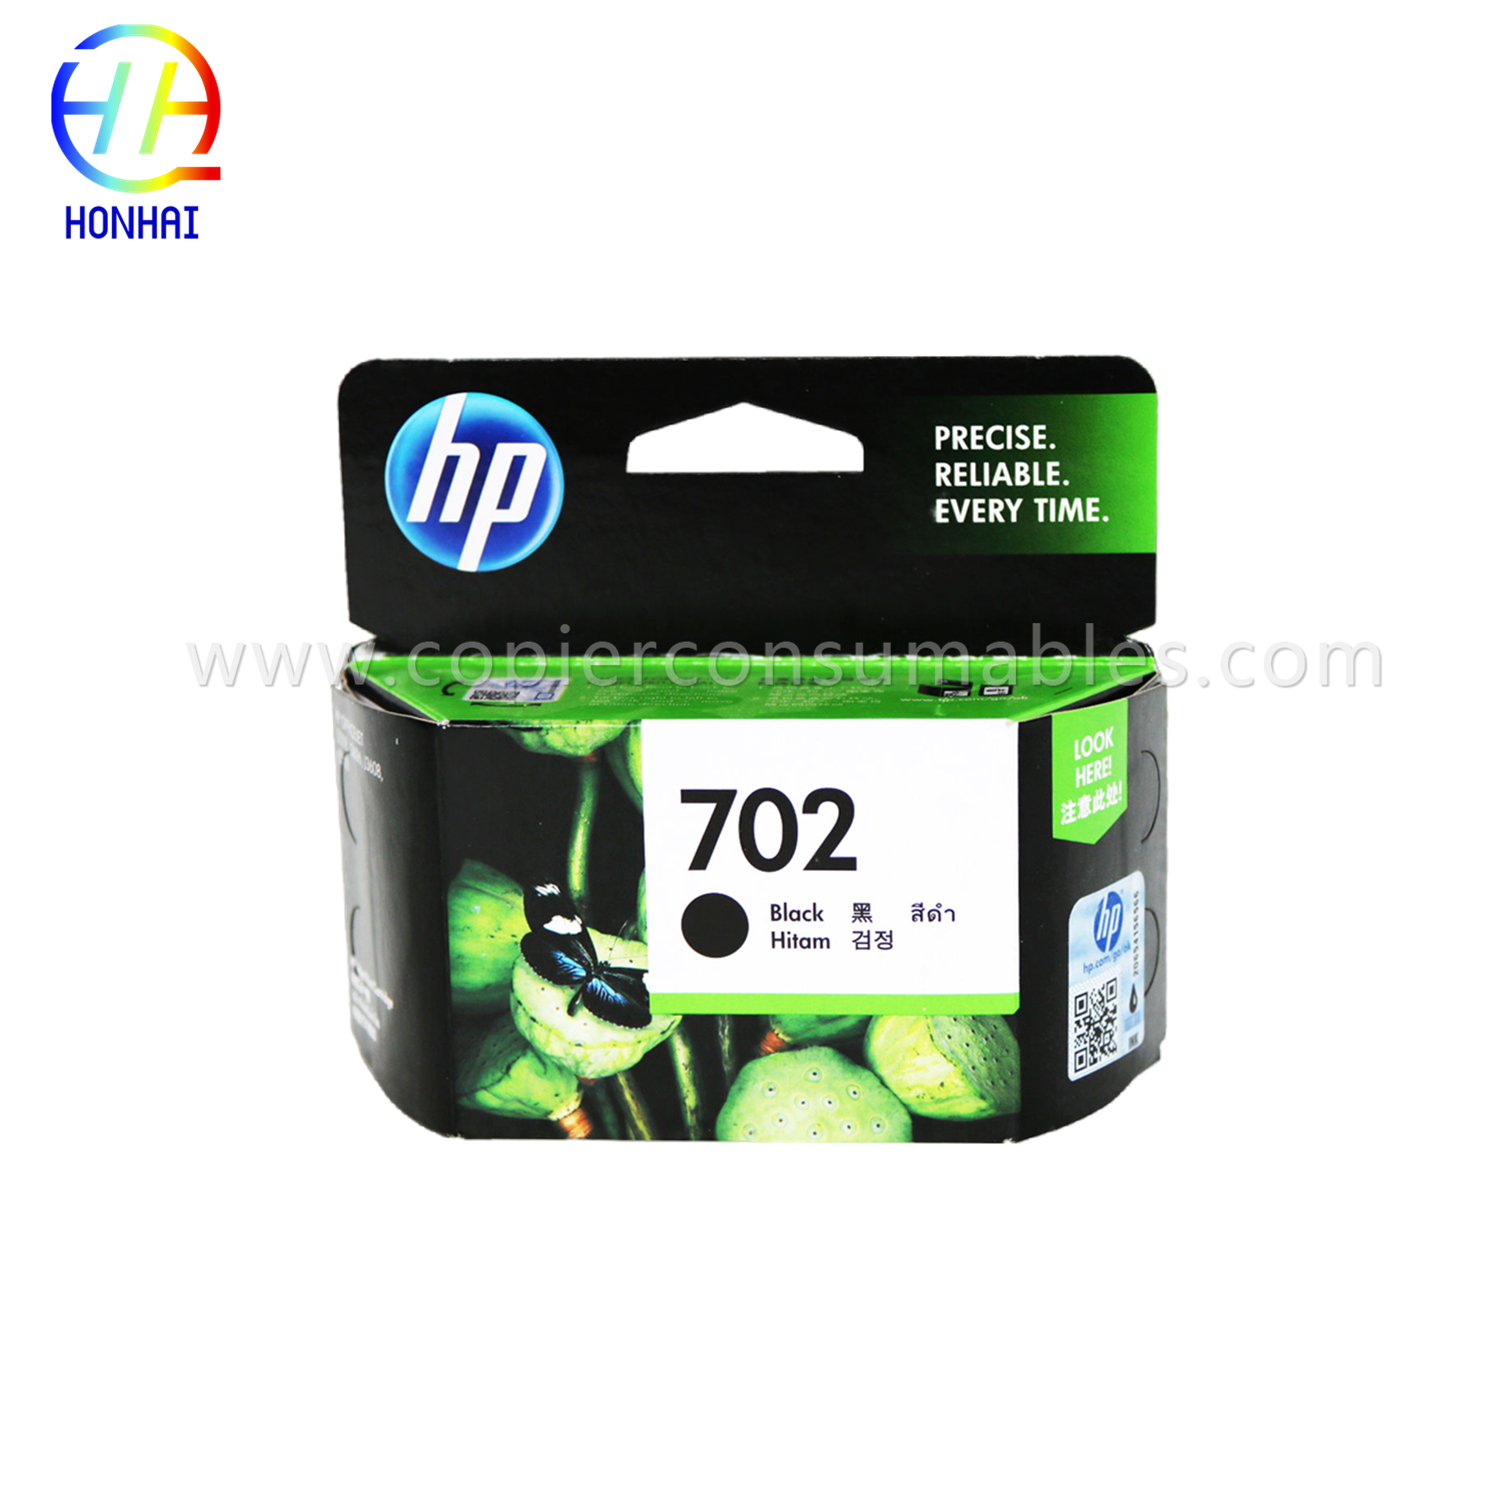 https://www.copierhonhaitech.com/ink-cartridge-for-hp-color-j3508-j3608-5508-3606-702-22-product/